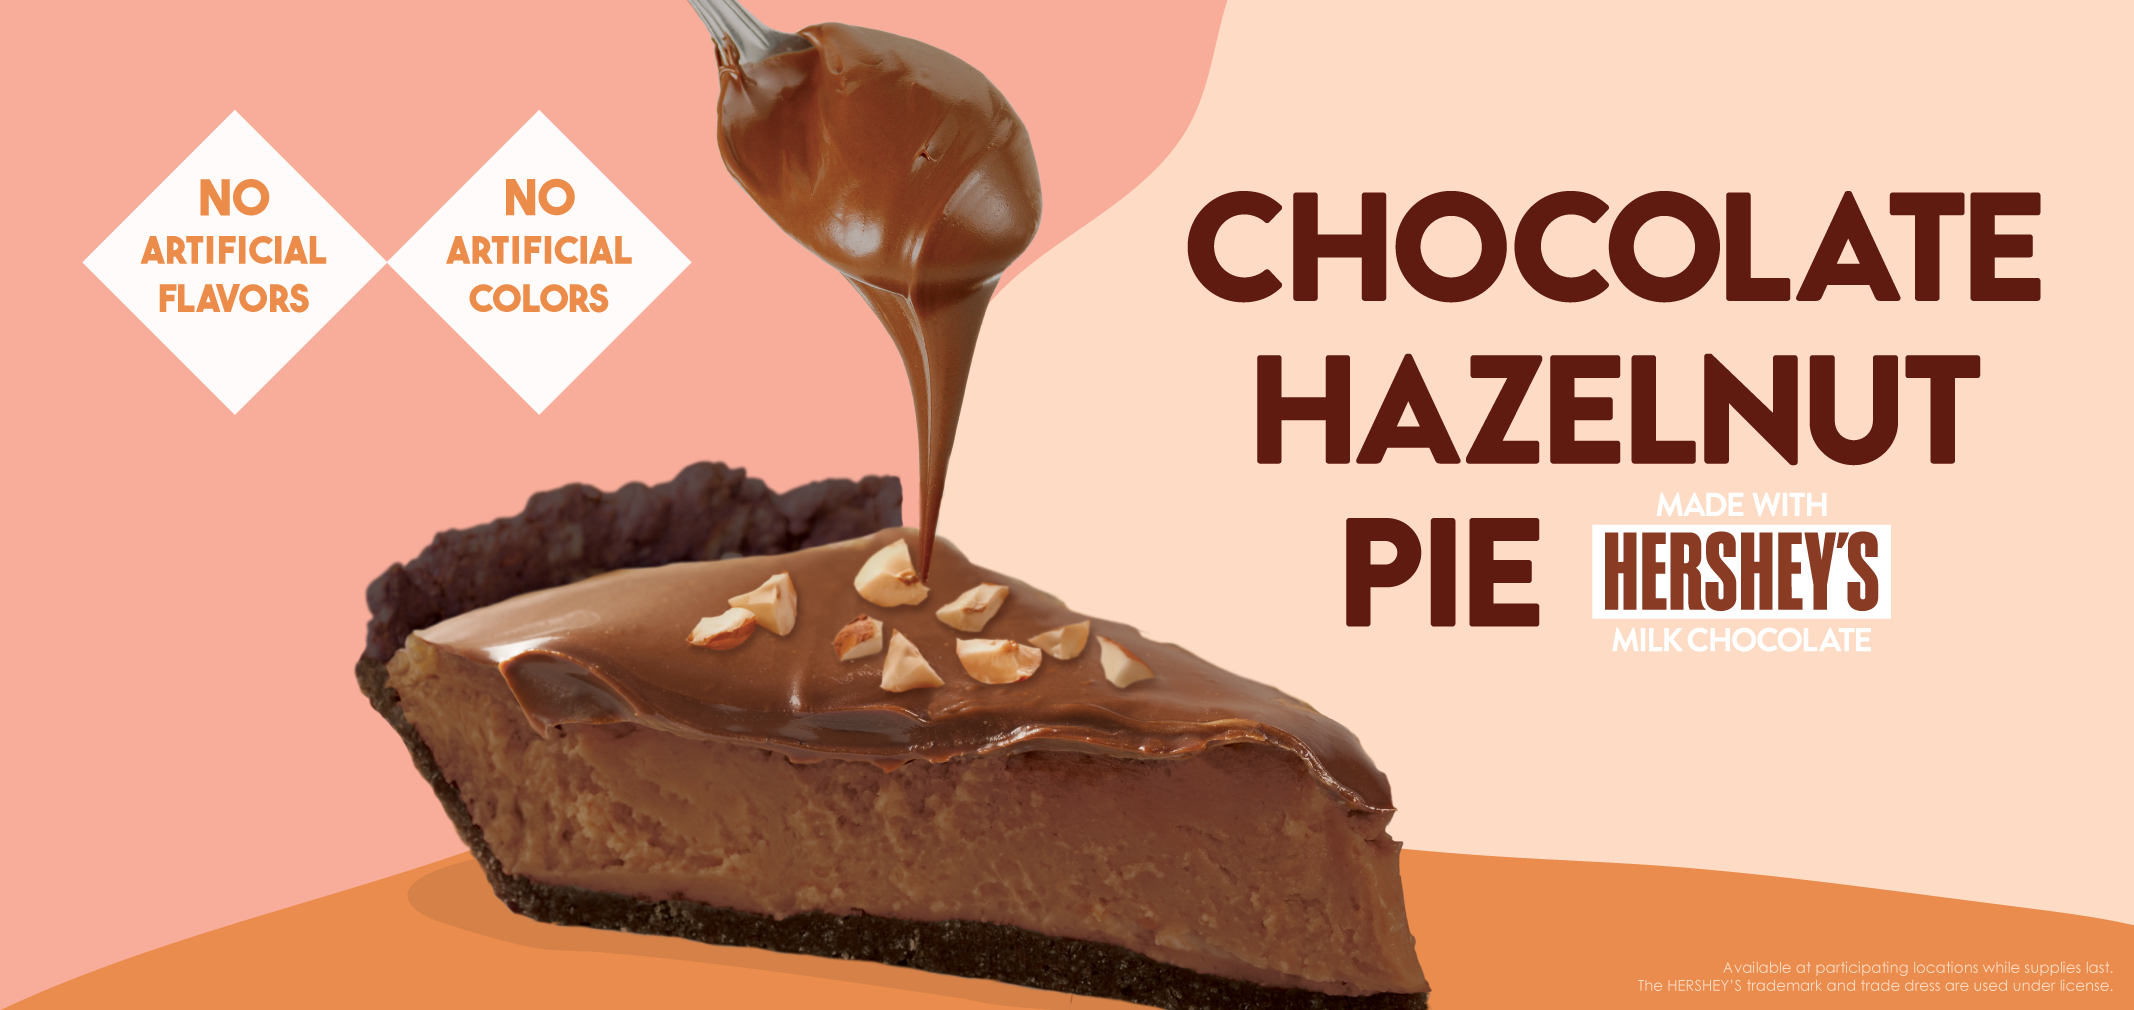 Chocolate Hazelnut Pie made with Hershey's Milk Chocolate label image